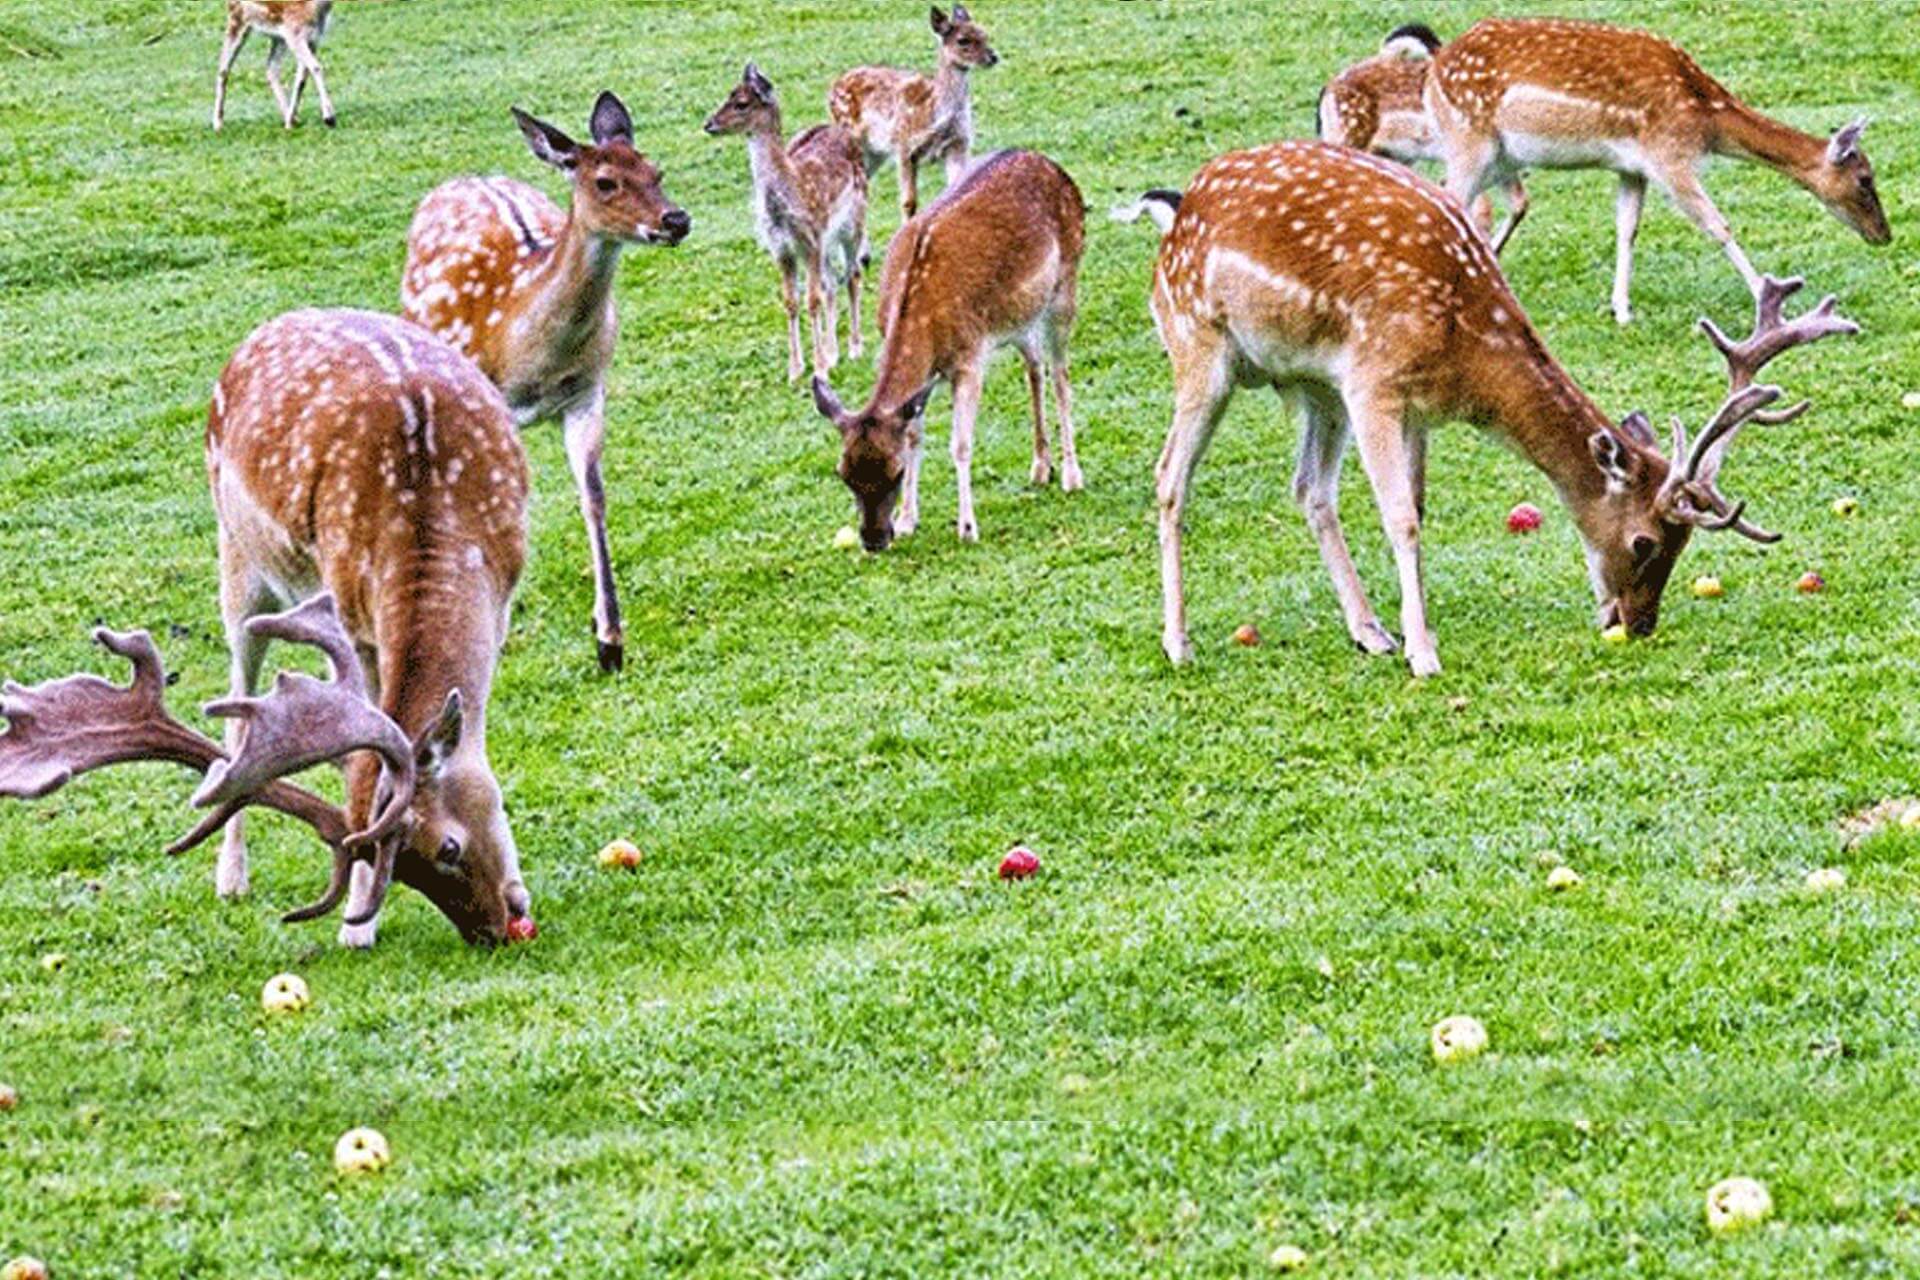 deer grazing on an extensive grass filed 